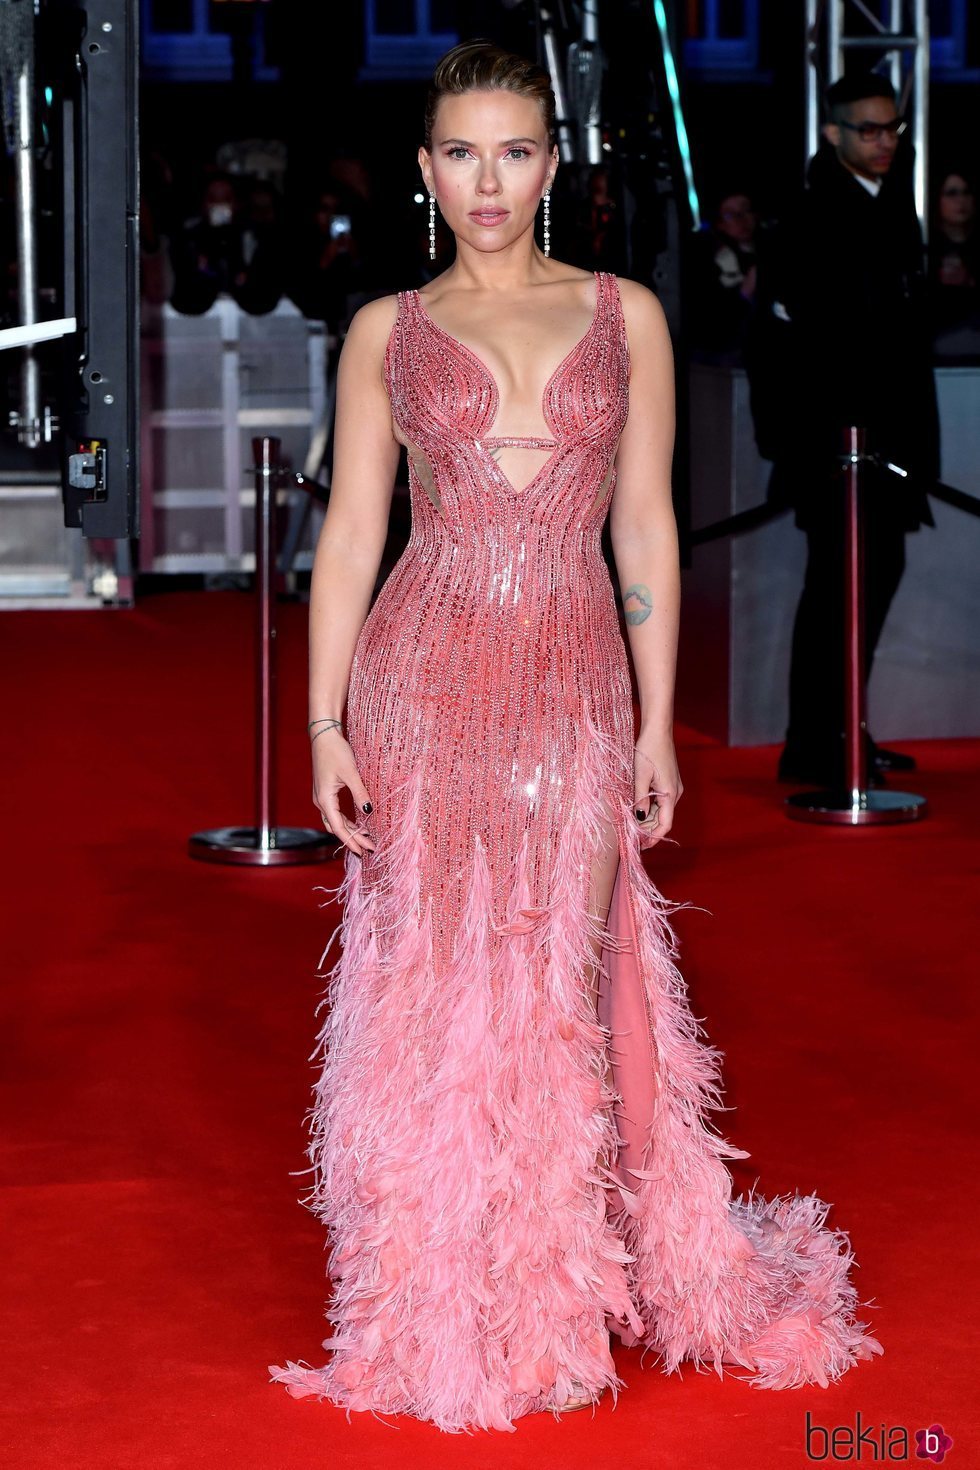 Scarlett Johansson en la alfombra roja de los Premios BAFTA 2020